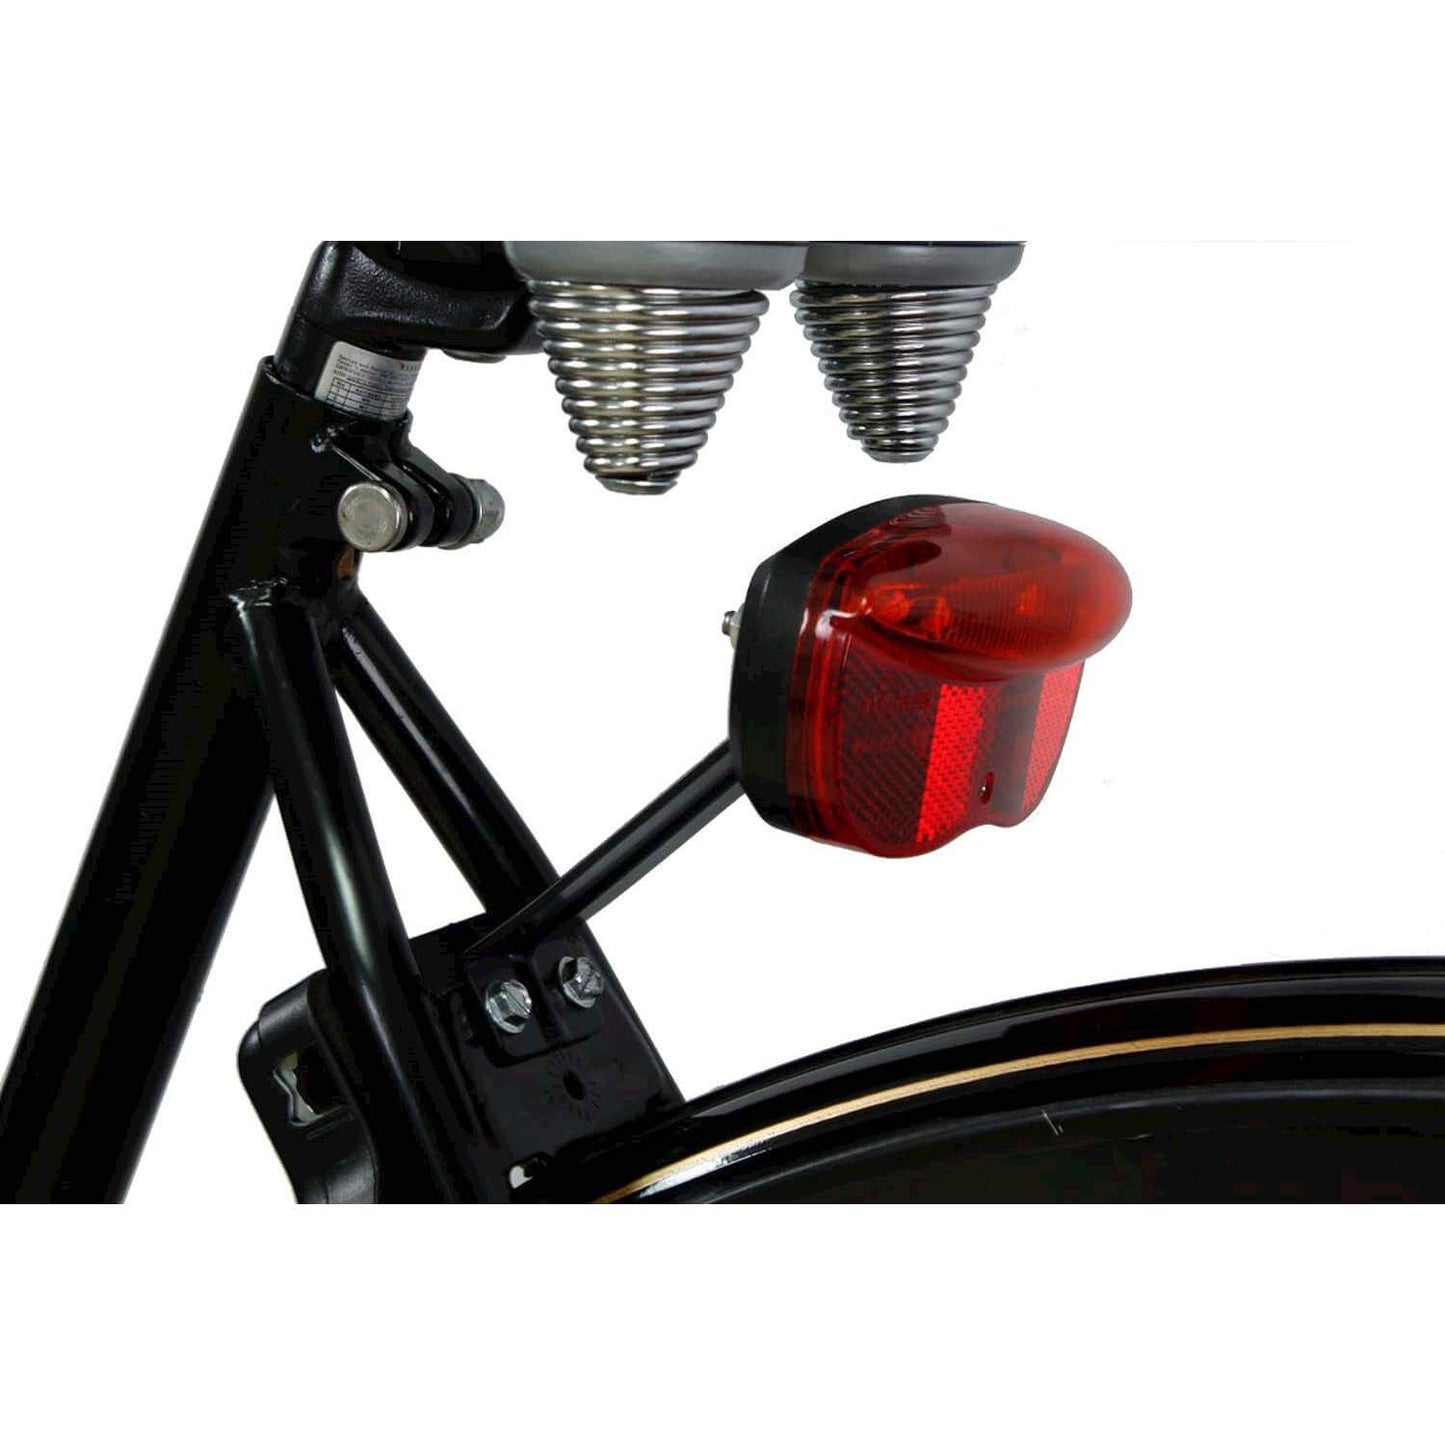 Steco achterlichtbeugel voor mont. op fietsframe (80mm)